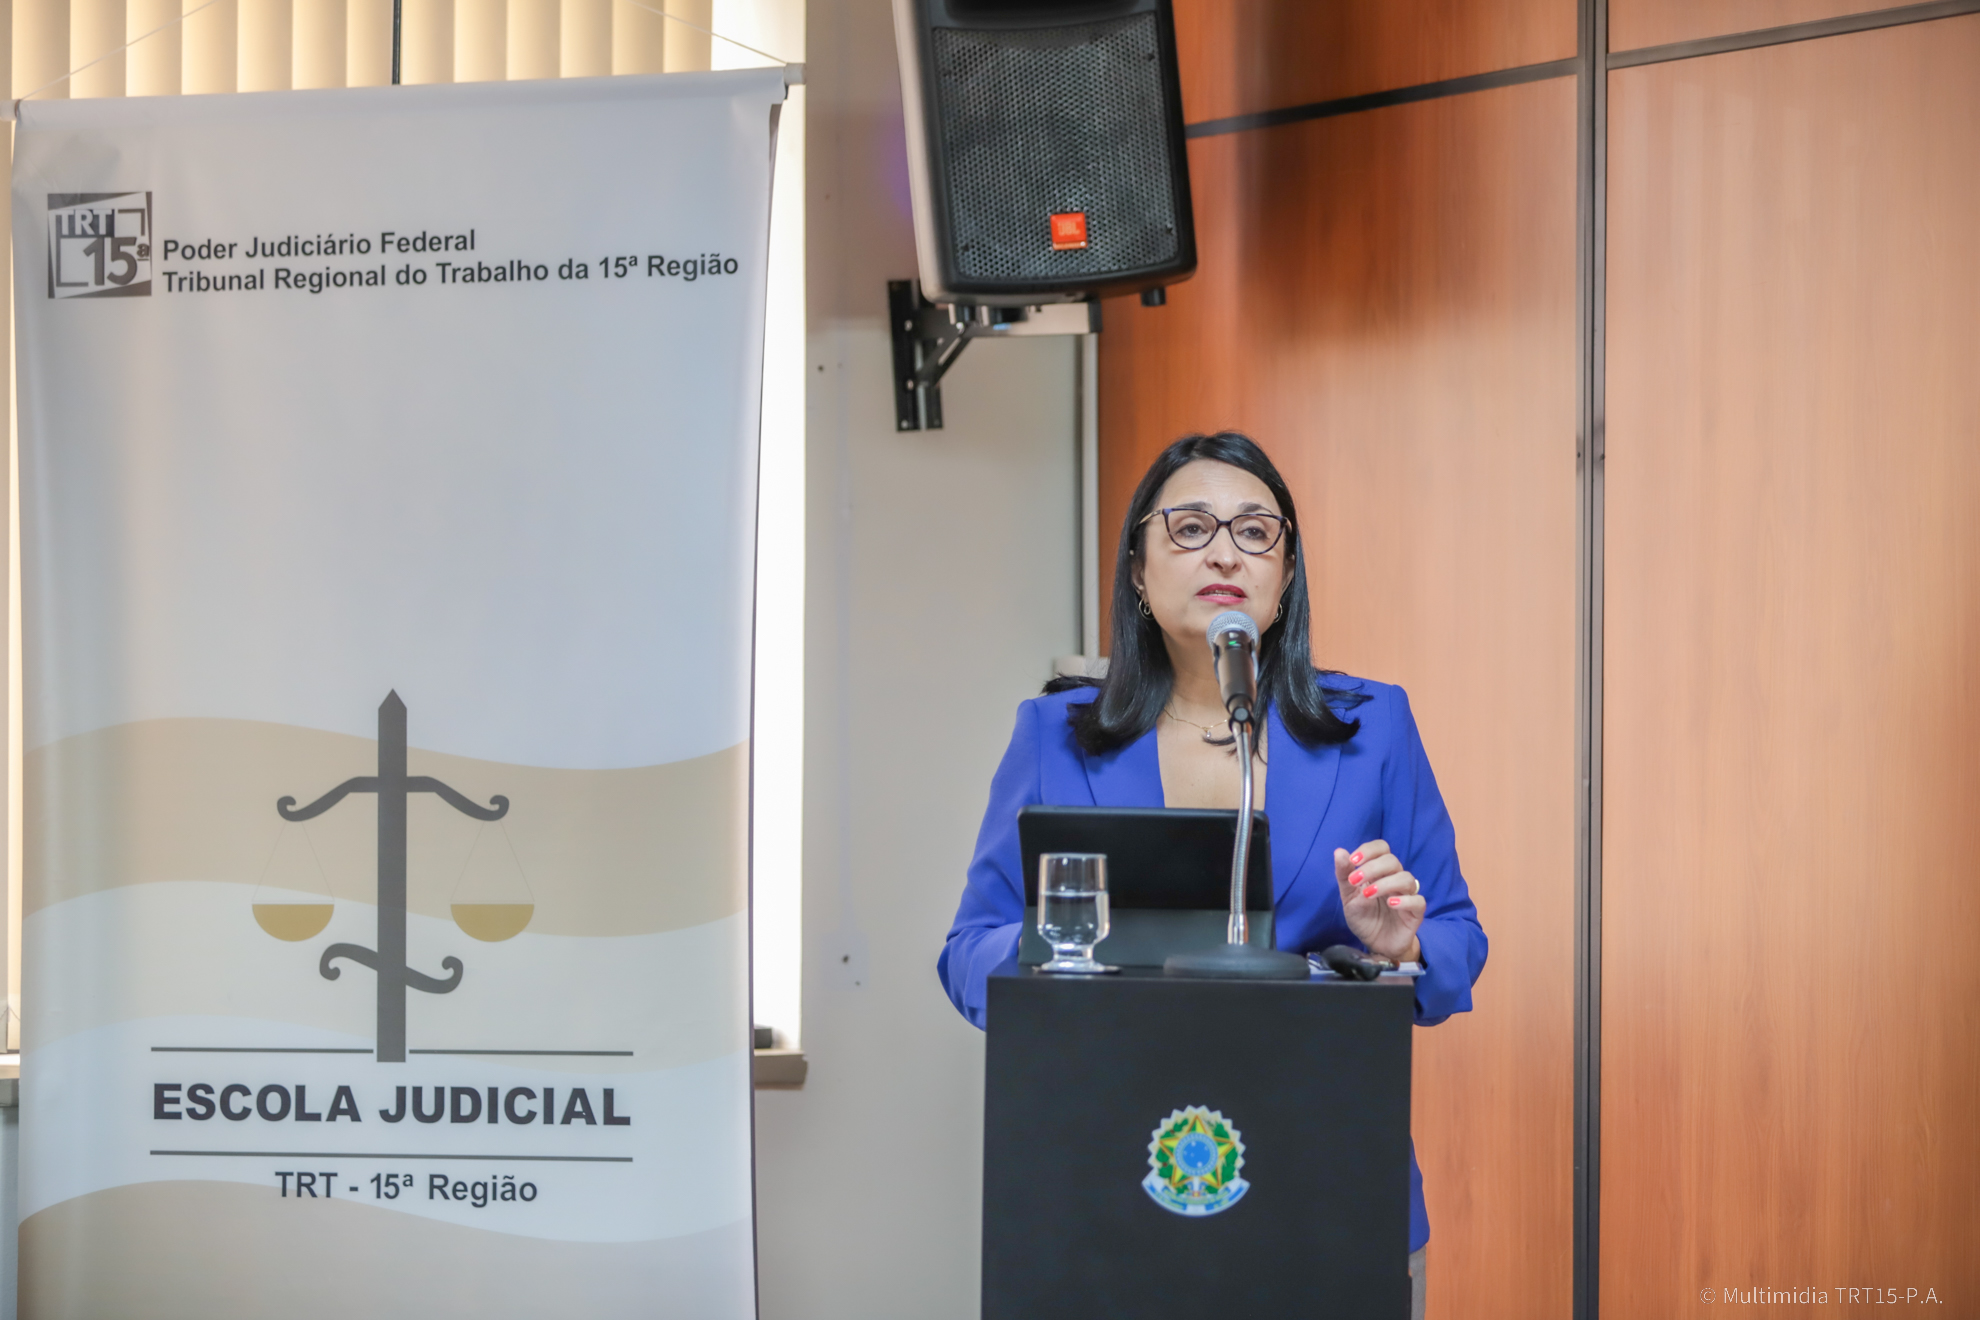 Escola Judicial promove debate sobre Inovação no Poder Judiciário